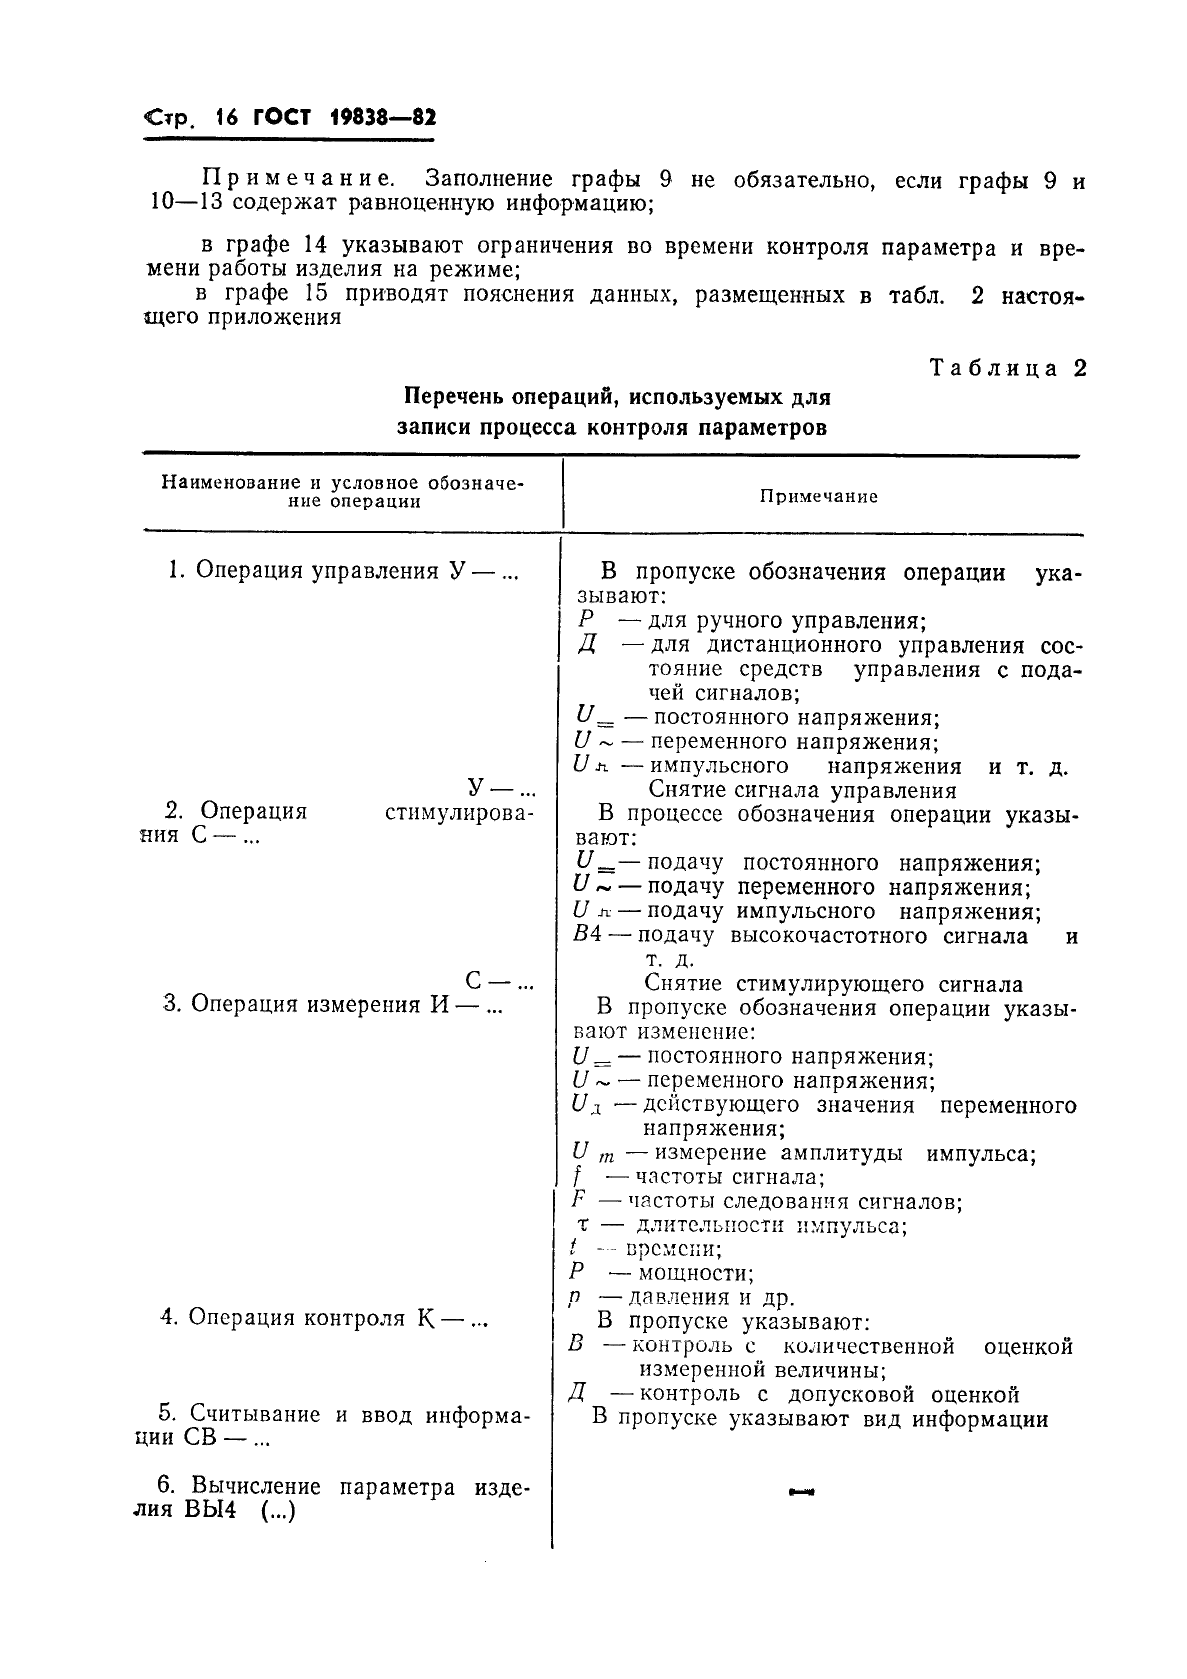 ГОСТ 19838-82 Характеристика контролепригодности изделий авиационной техники. Правила изложения и оформления (фото 17 из 21)